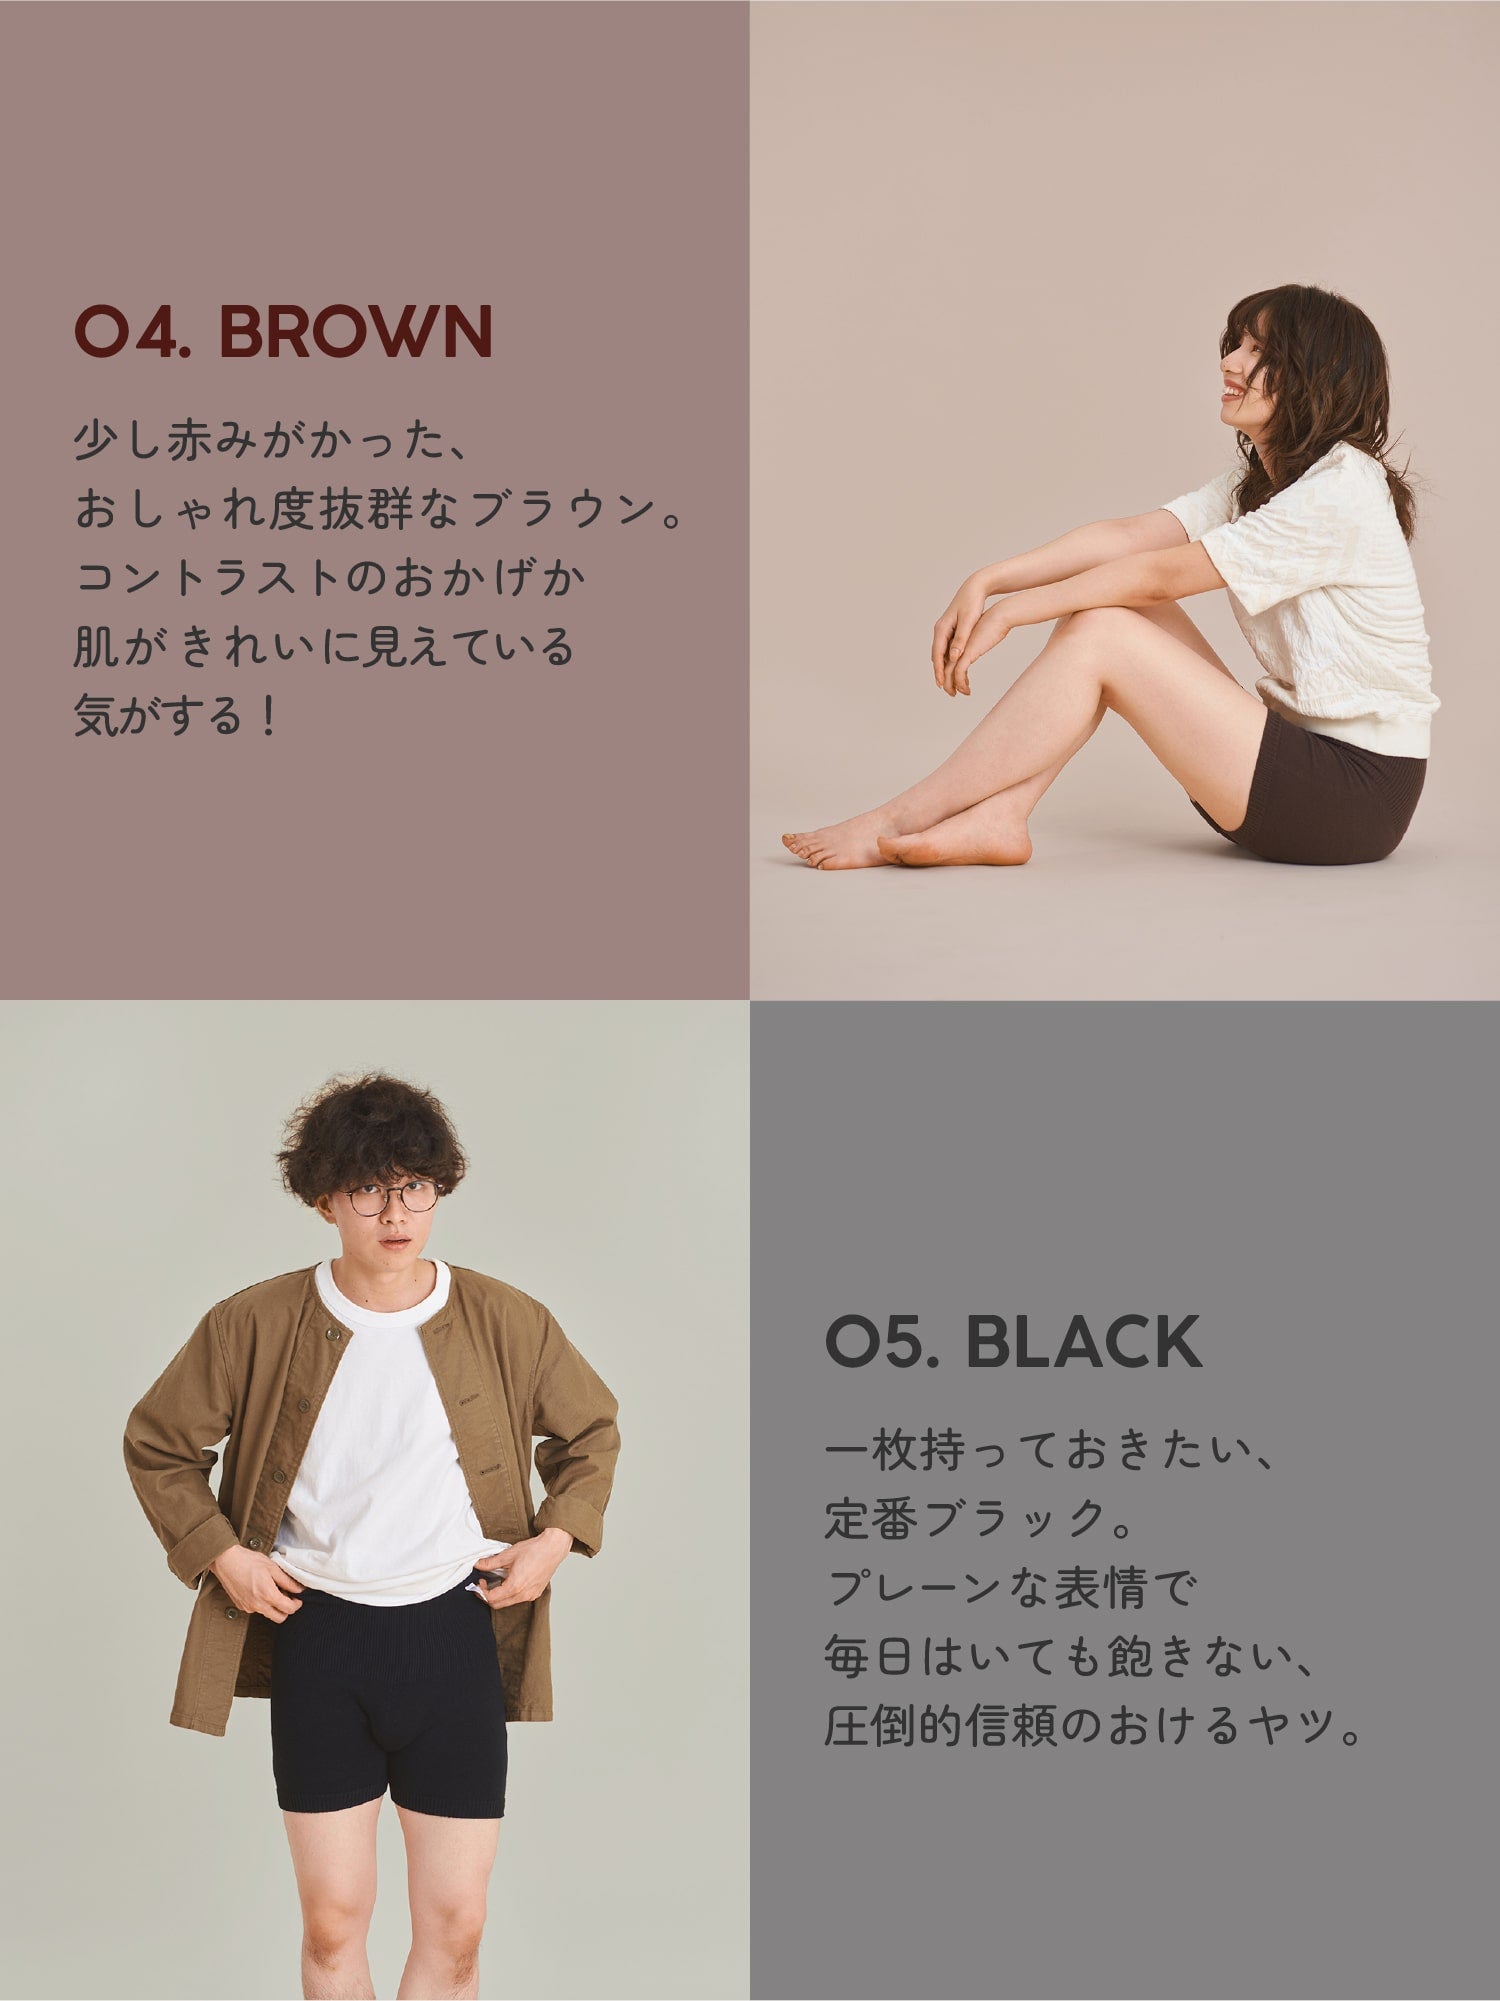 04. BROWN 05. BLACK